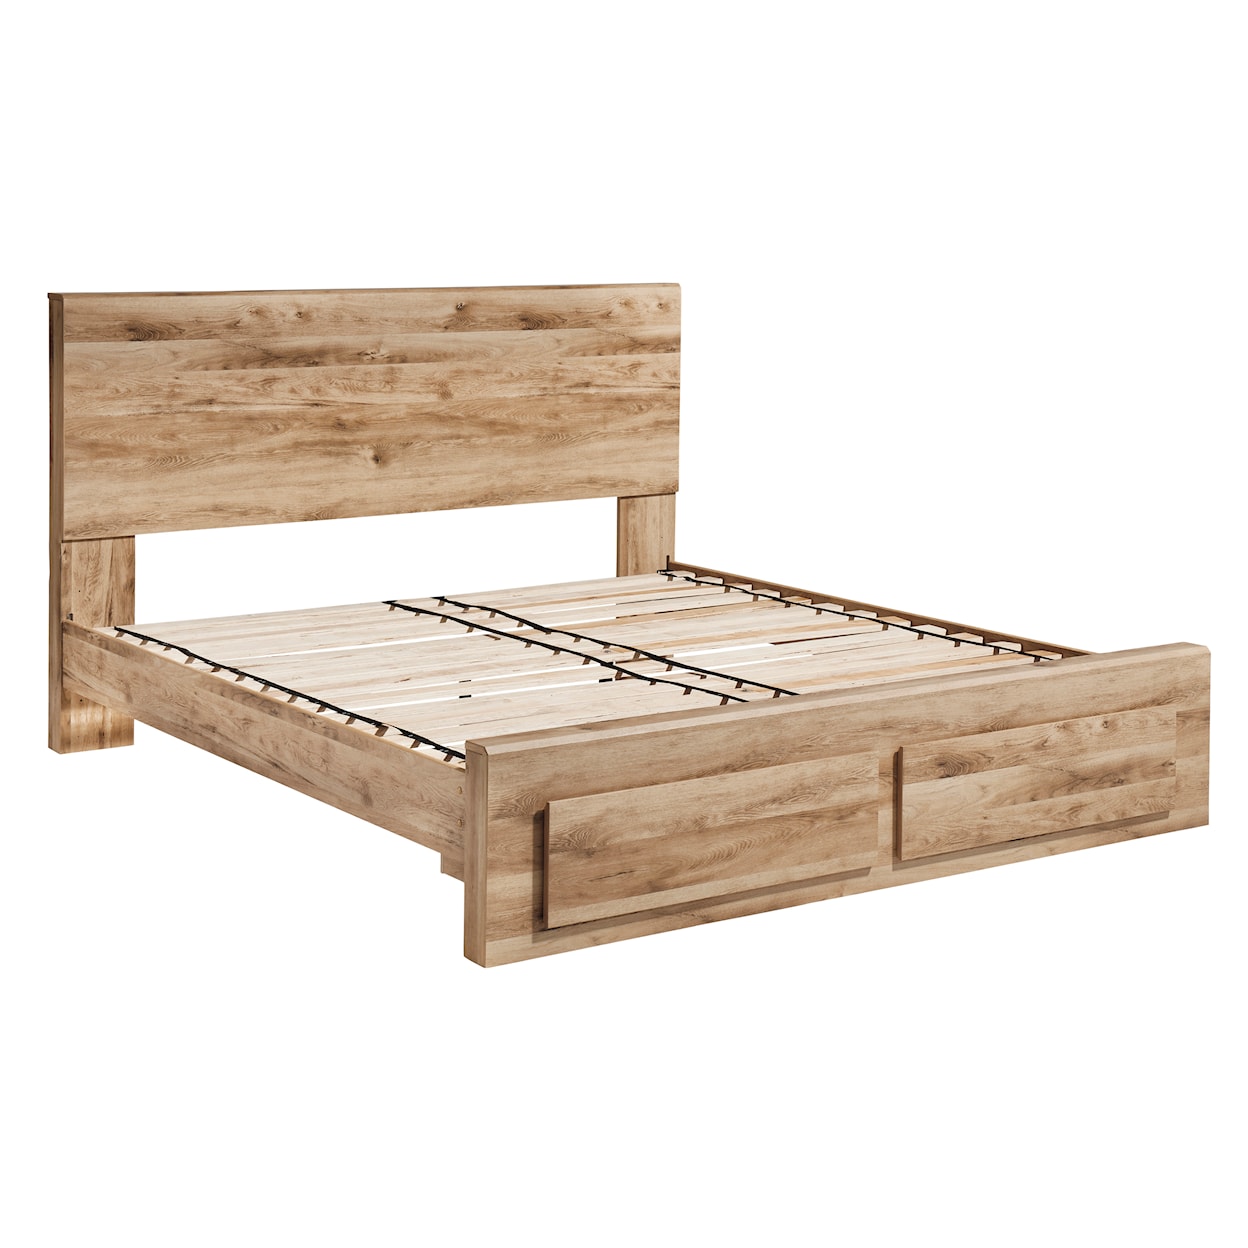 Benchcraft Hyanna King Panel Storage Bed